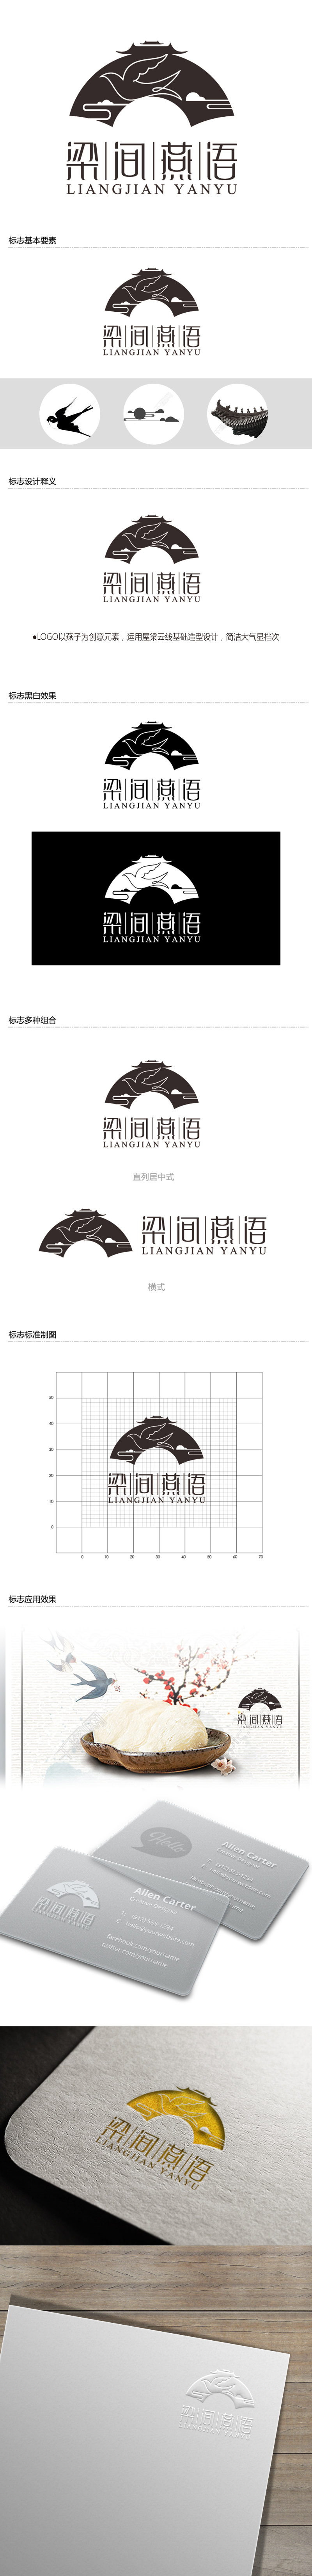 黄安悦的梁间燕语食品销售logo设计